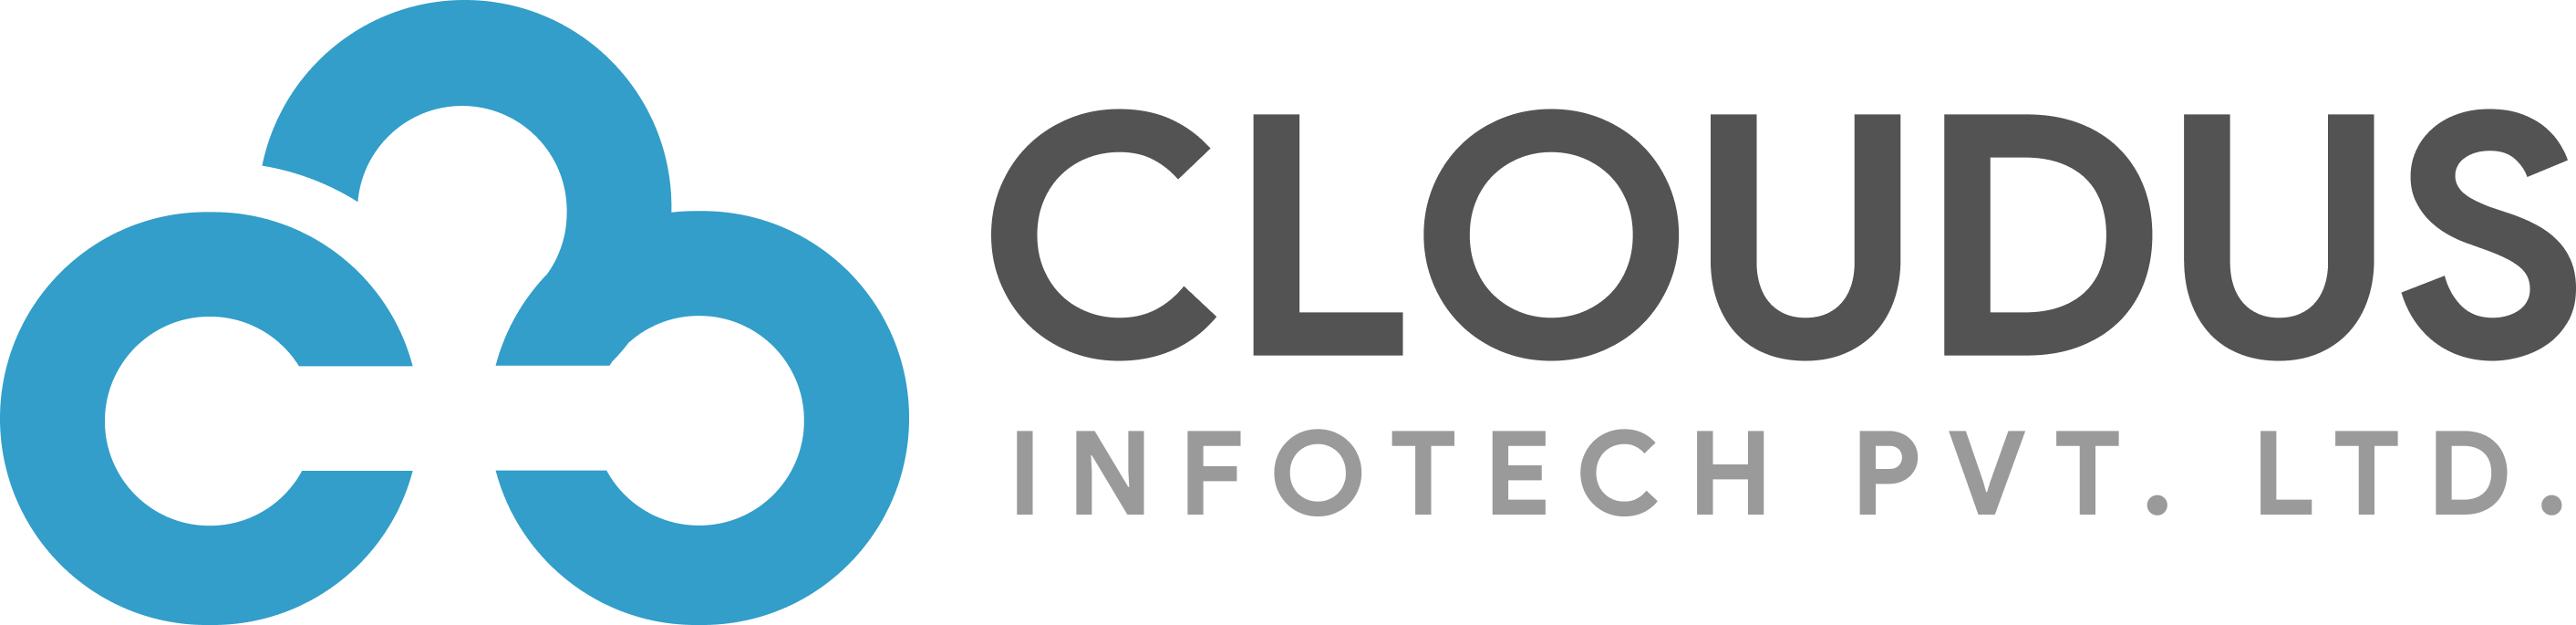 cloudus-infotech